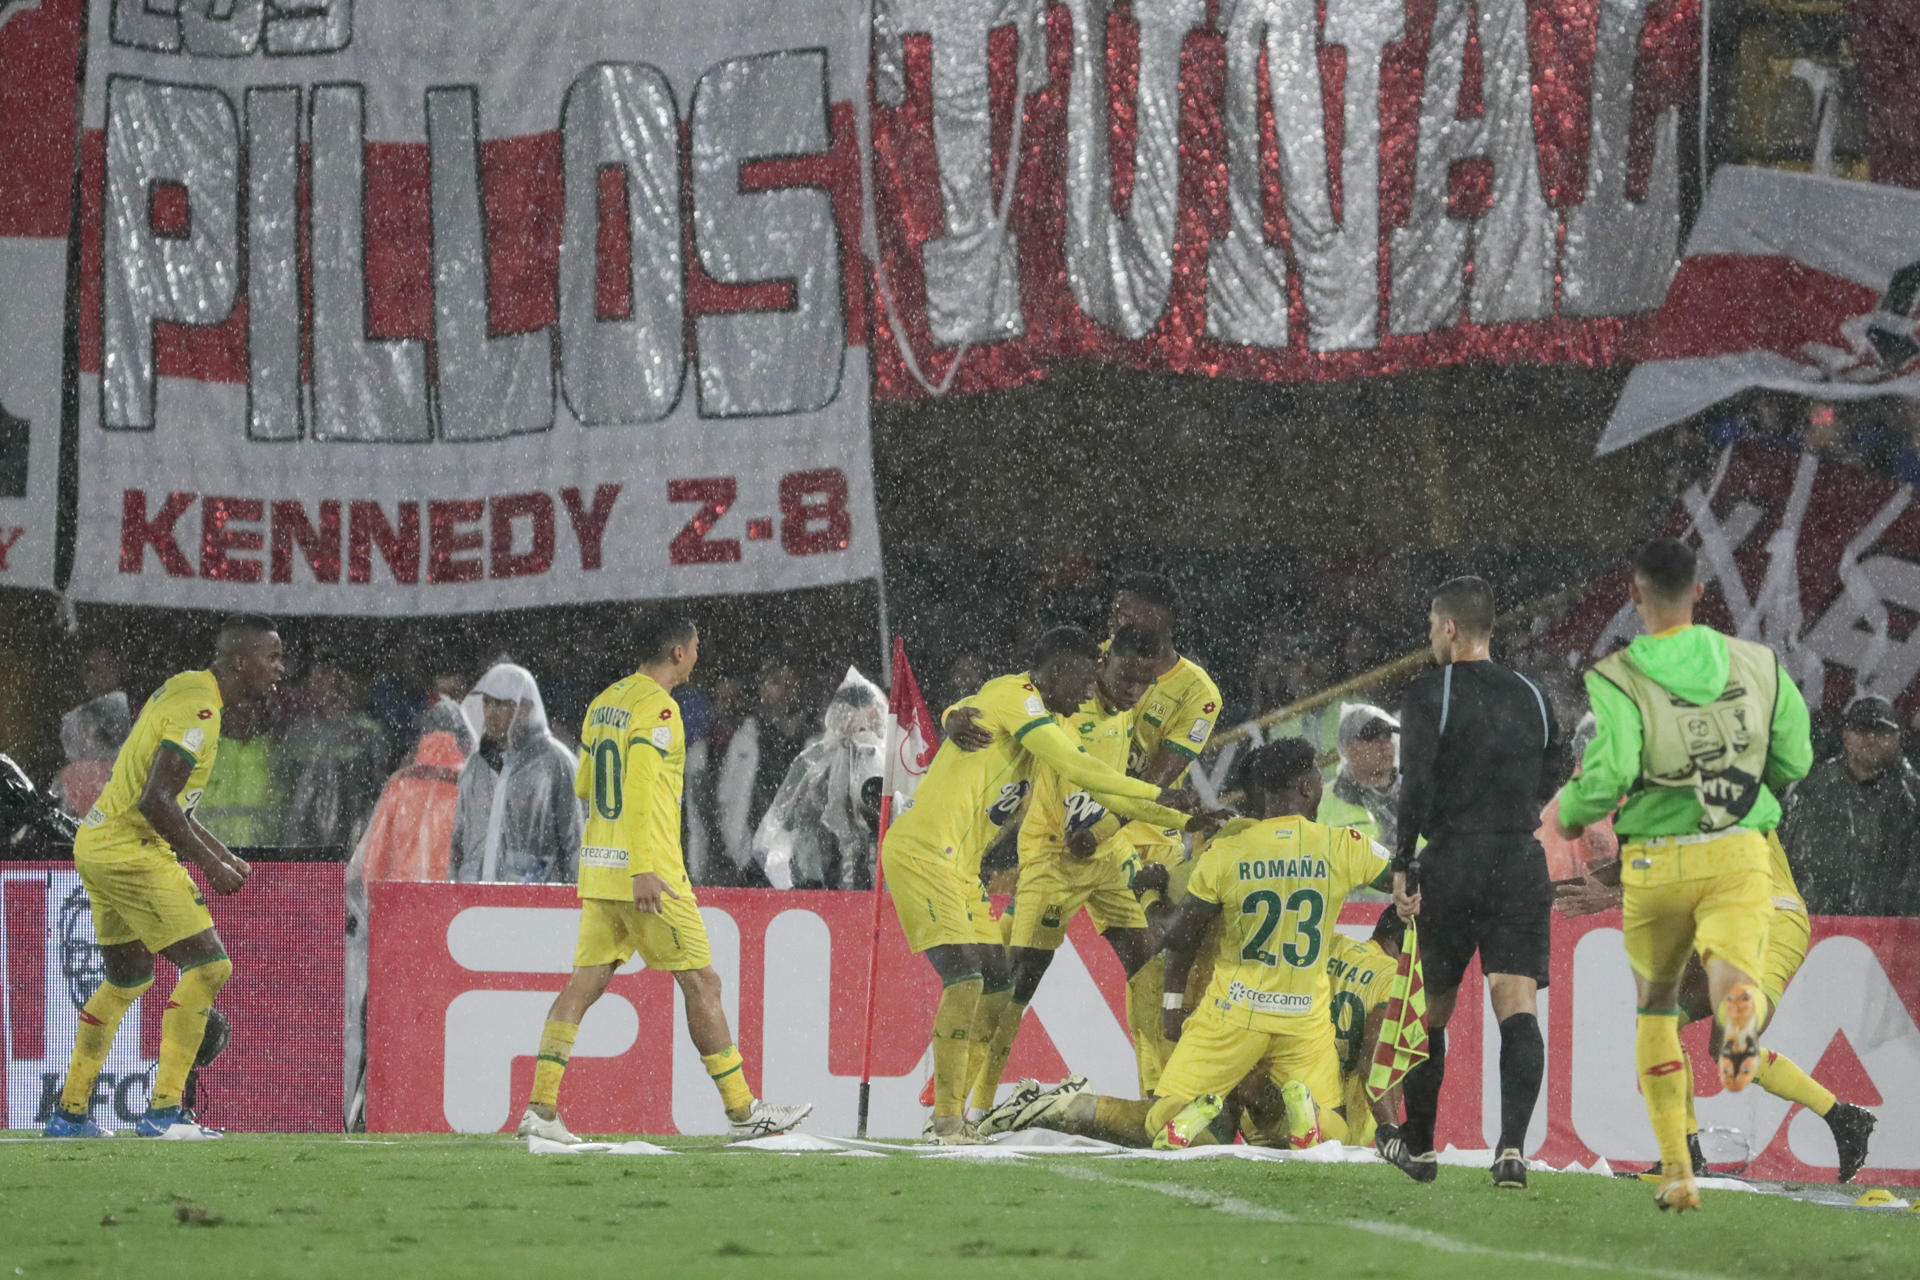 Jugadores del Atlético Bucaramanga fueron registrados este sábado, 15 de junio, al celebrar un gol que le anotaron a Santa Fe, durante el partido de vuelta de la Final de Torneo Apertura de fútbol en Colombia, en el estadio El Campín de Bogotá. EFE/Carlos Ortega